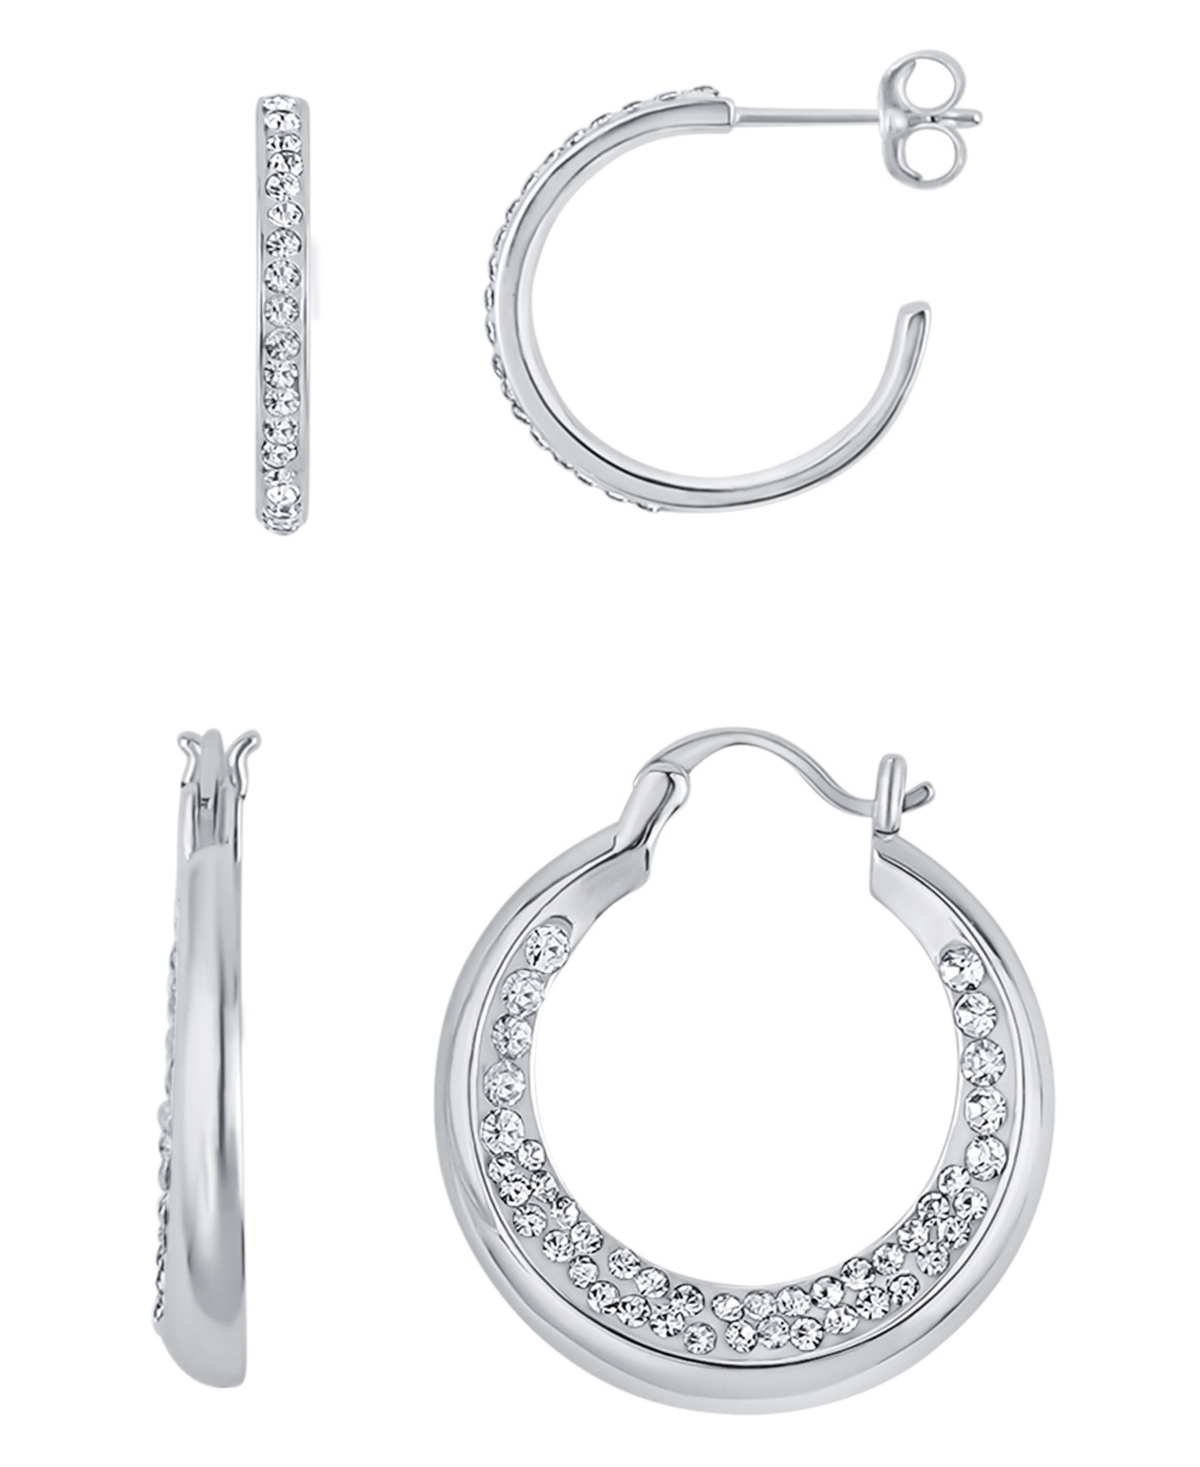 Duo Crystal Hoop Earrings, Set of 2 - Silver Plated